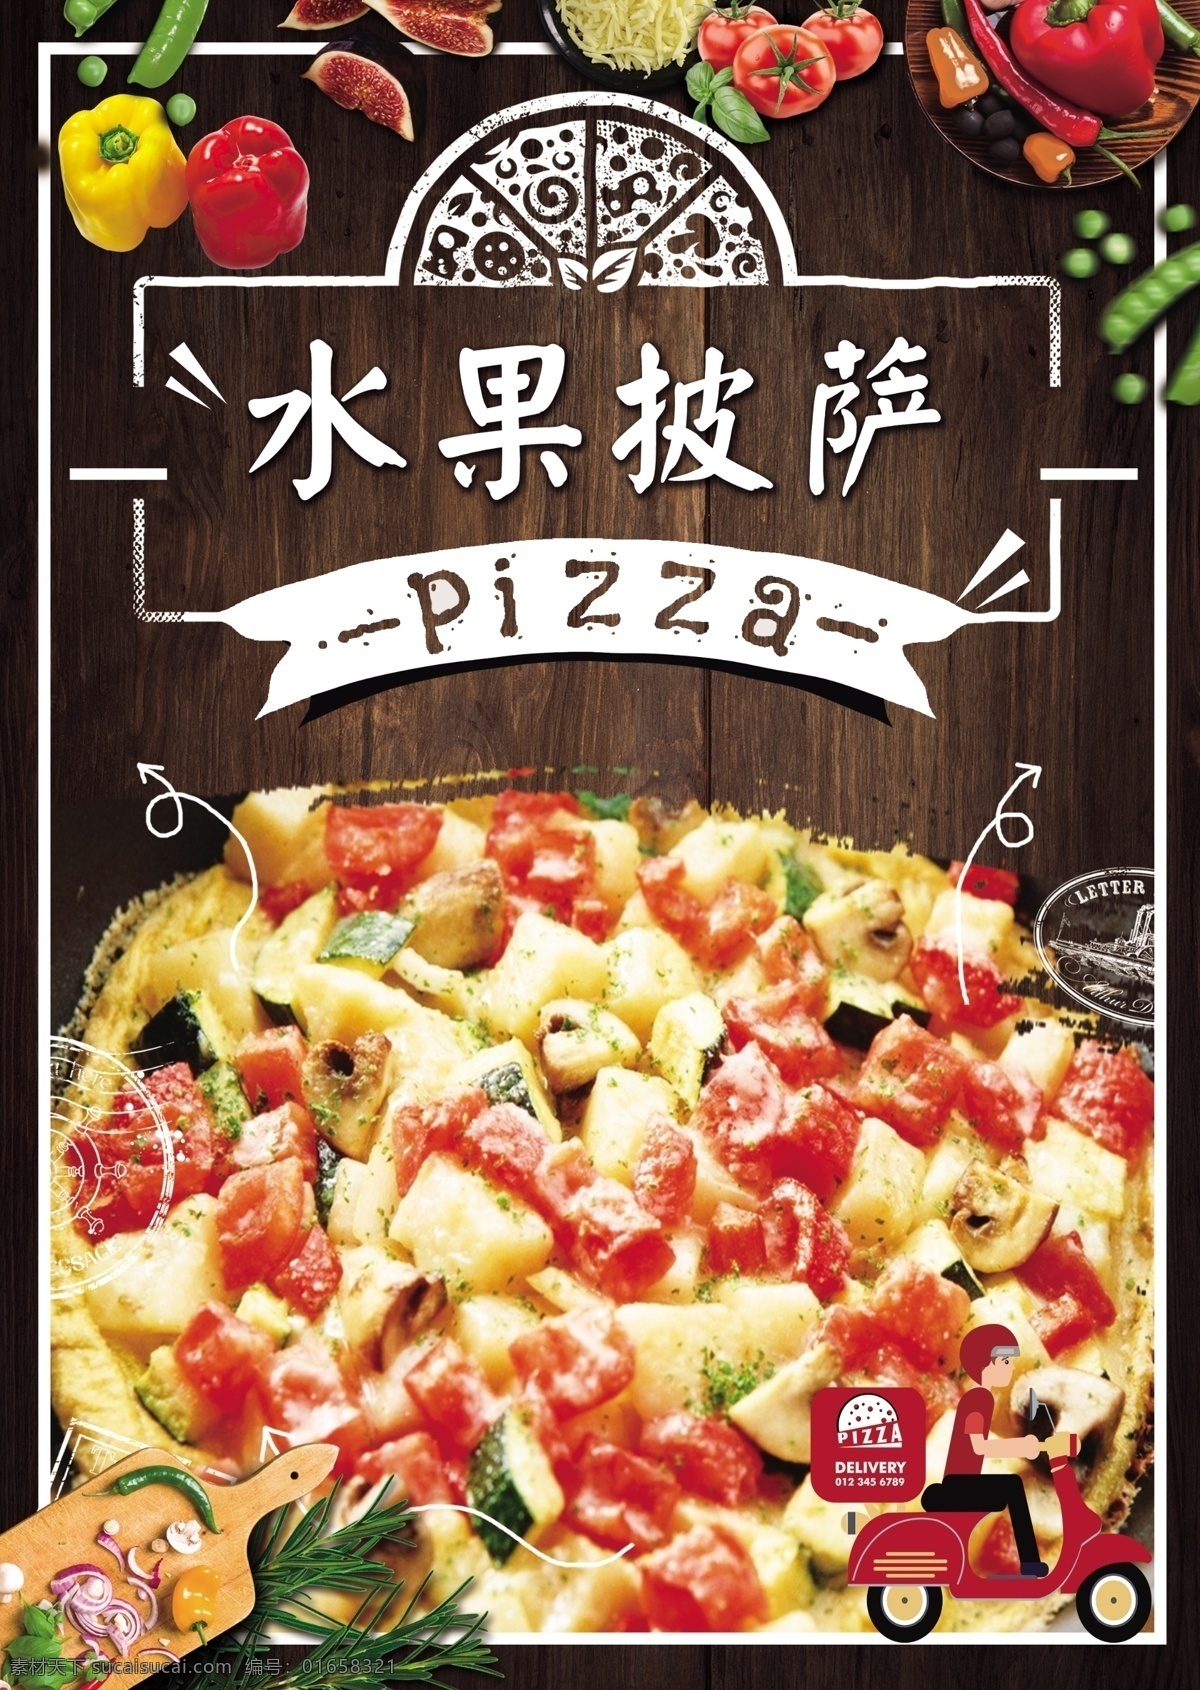 水果披萨 pizza 披萨 披萨店 烤披萨 做披萨 披萨图片 披萨海报 披萨展板 披萨墙画 披萨菜单 牛肉披萨 夏威夷披萨 bbq披萨 田园披萨 菠萝披萨 意式披萨 披萨字体 培根披萨 至尊披萨 披萨展架 西餐披萨 披萨广告 披萨宣传 披萨制作 外卖披萨 披萨宣传单 披萨单页 美味披萨